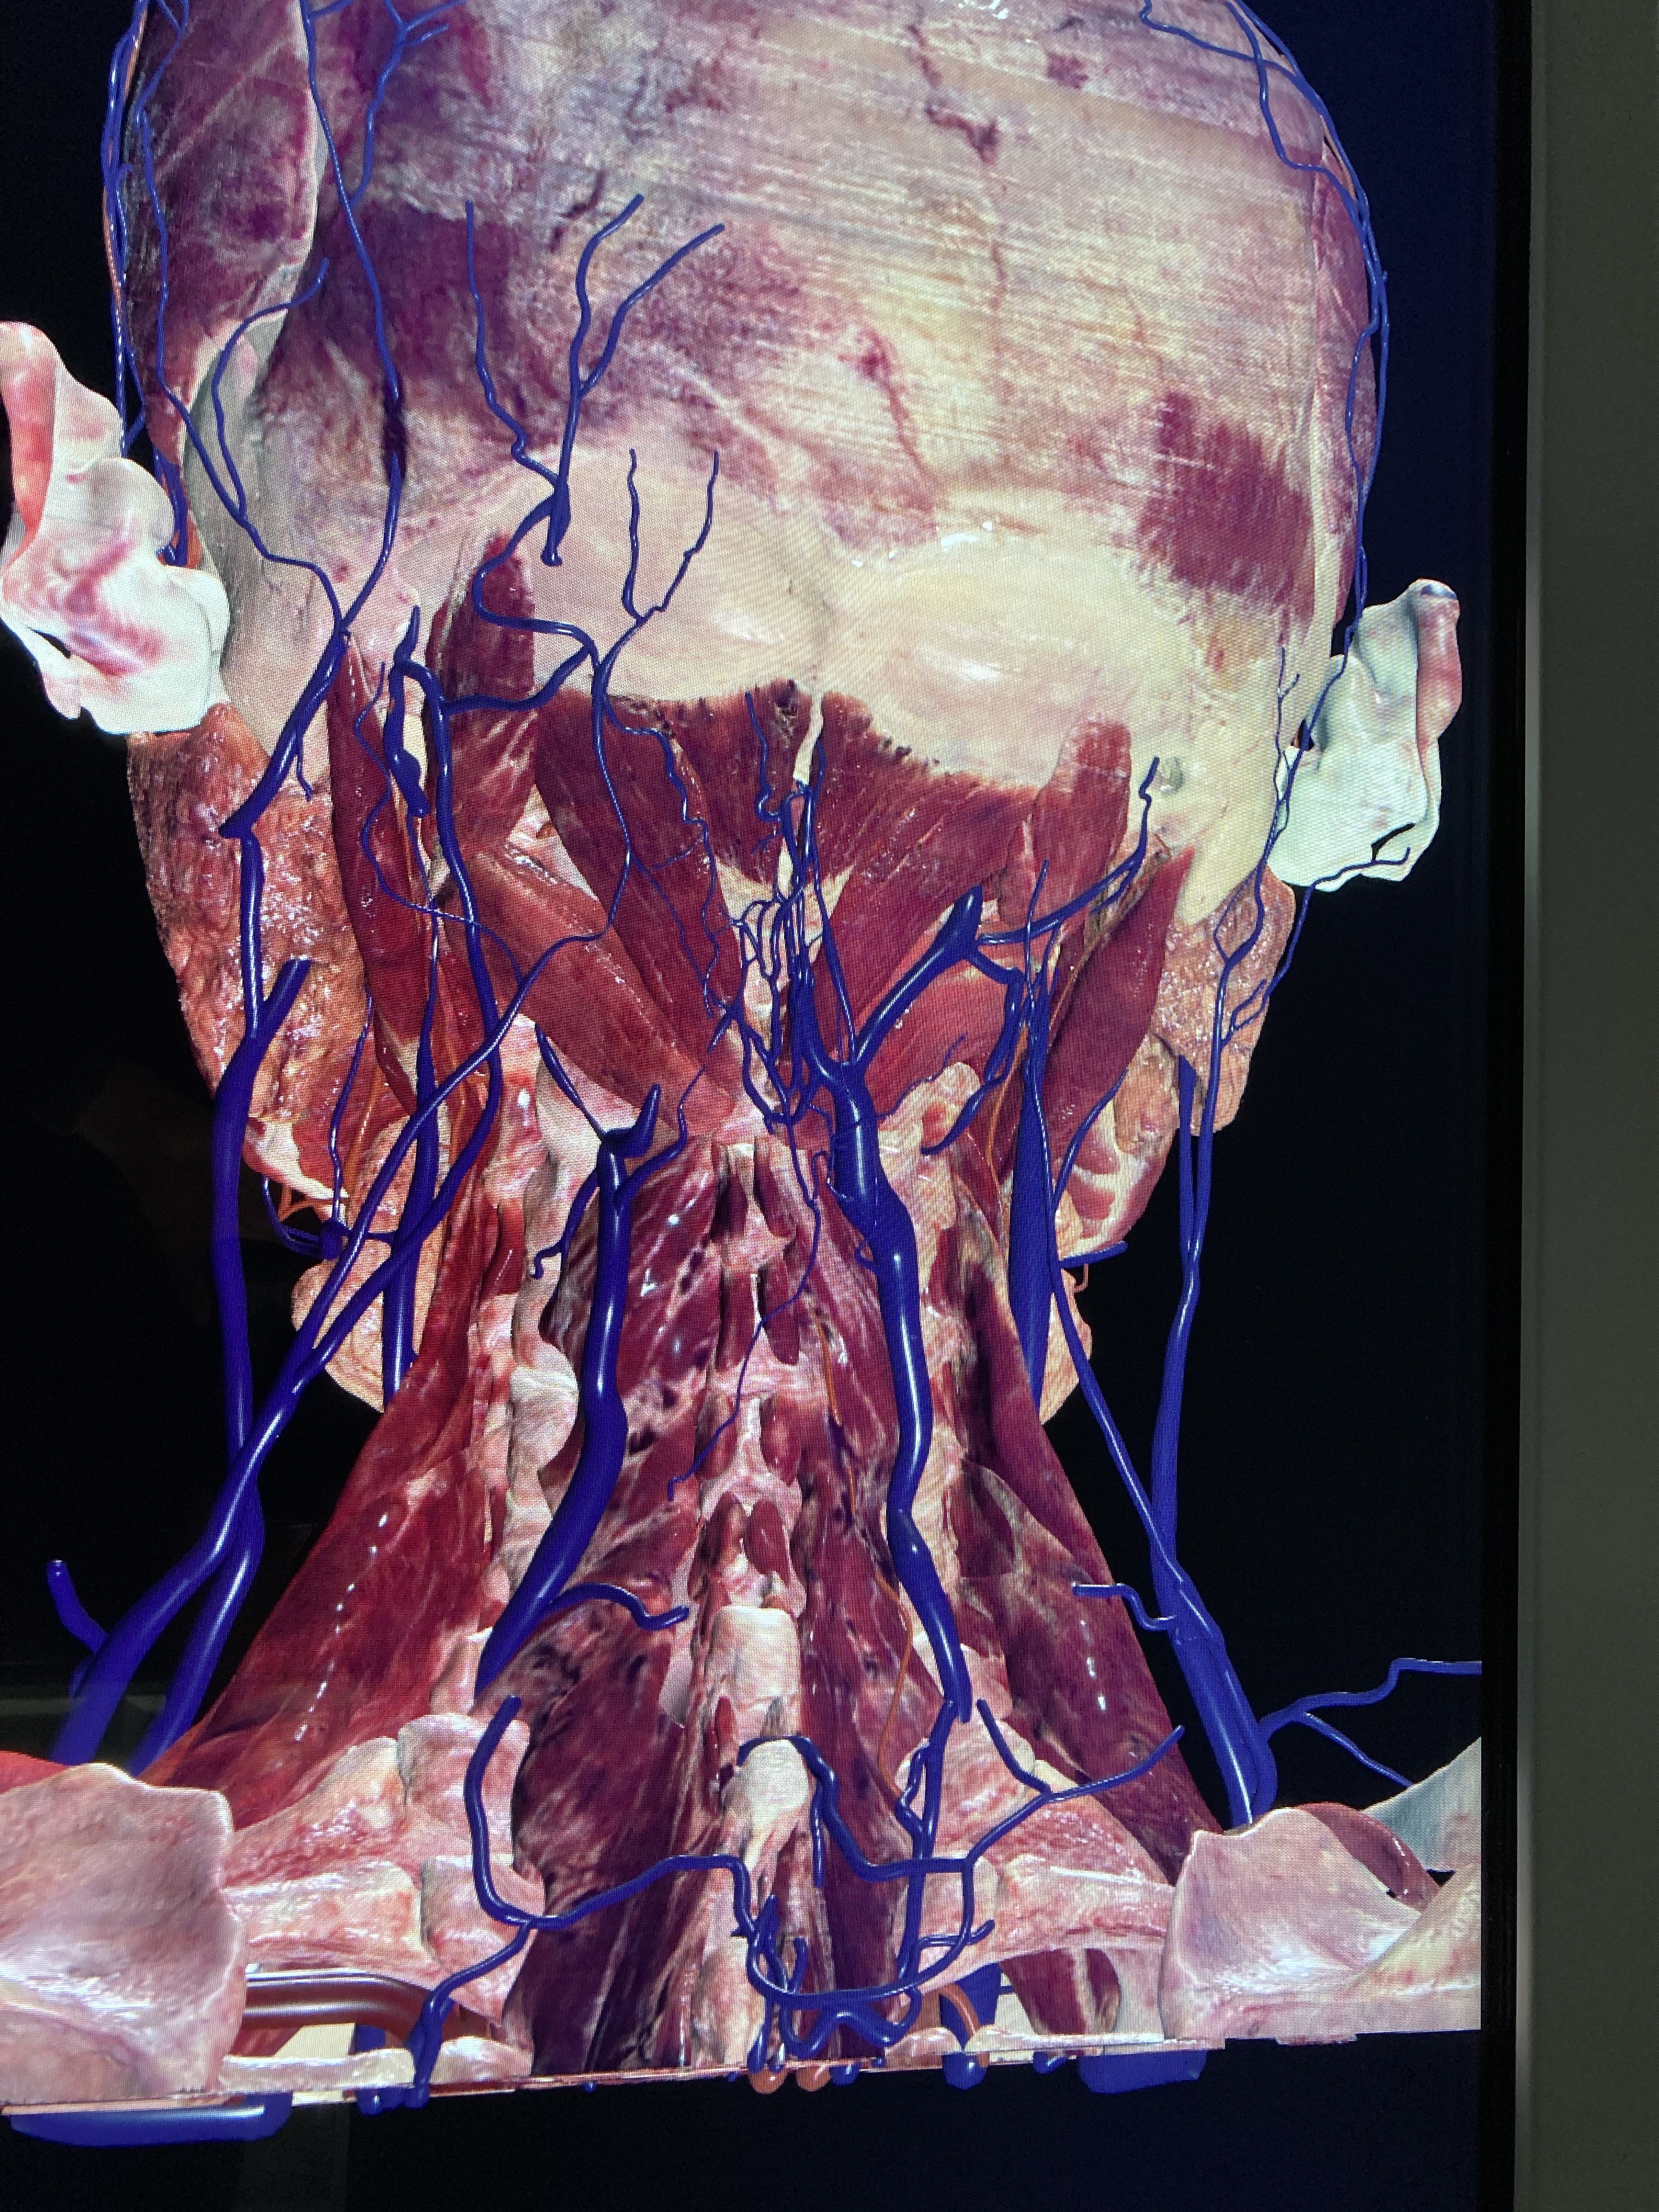 Virtuele dissectie van de cwk: Van A(natomie) naar B(etere zorg)